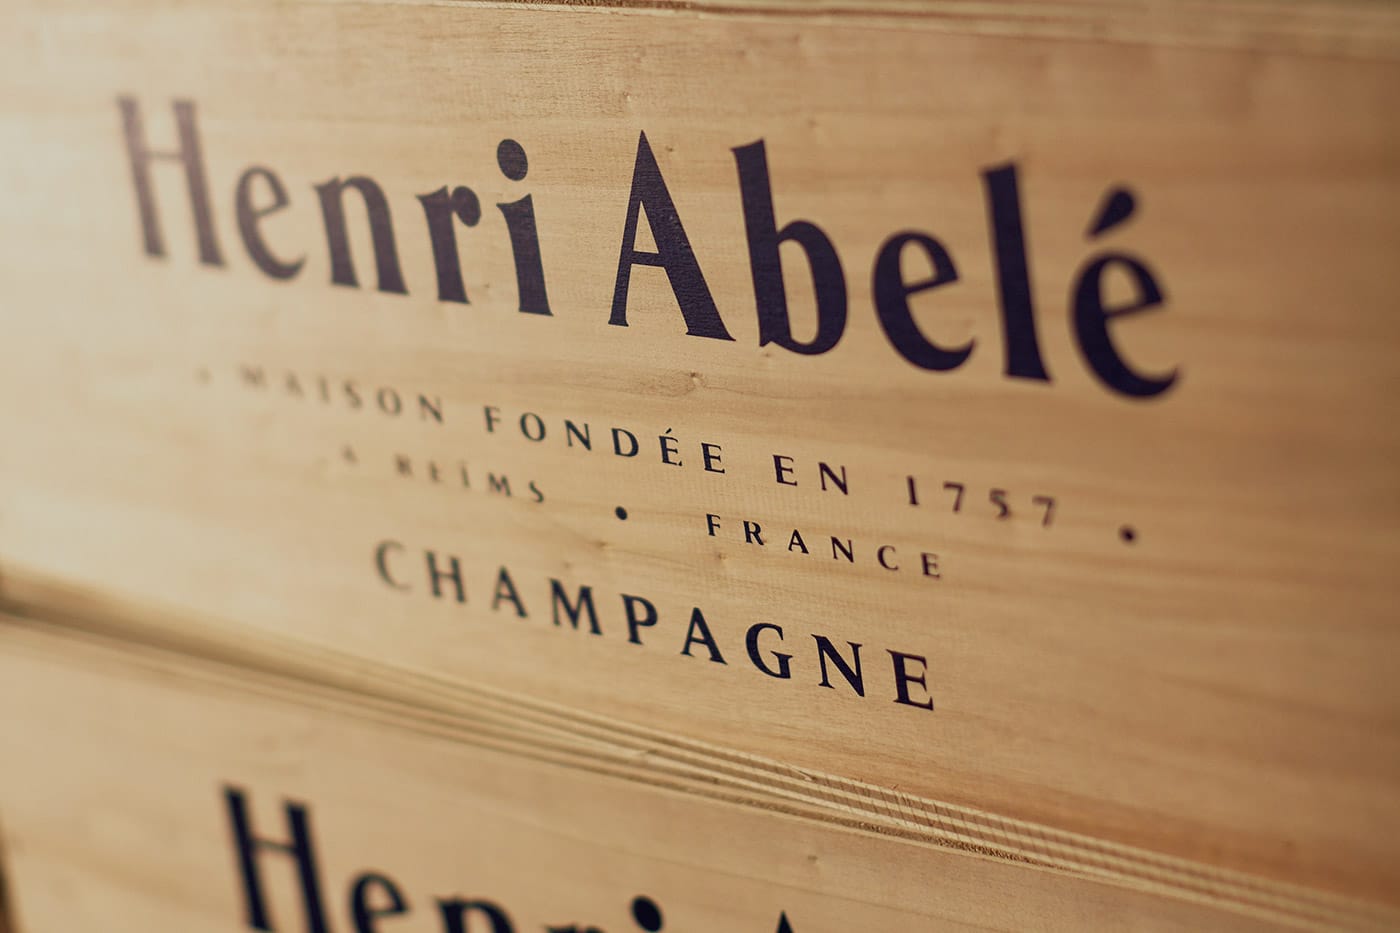 Viinilaatikko Henri Abele Champagne